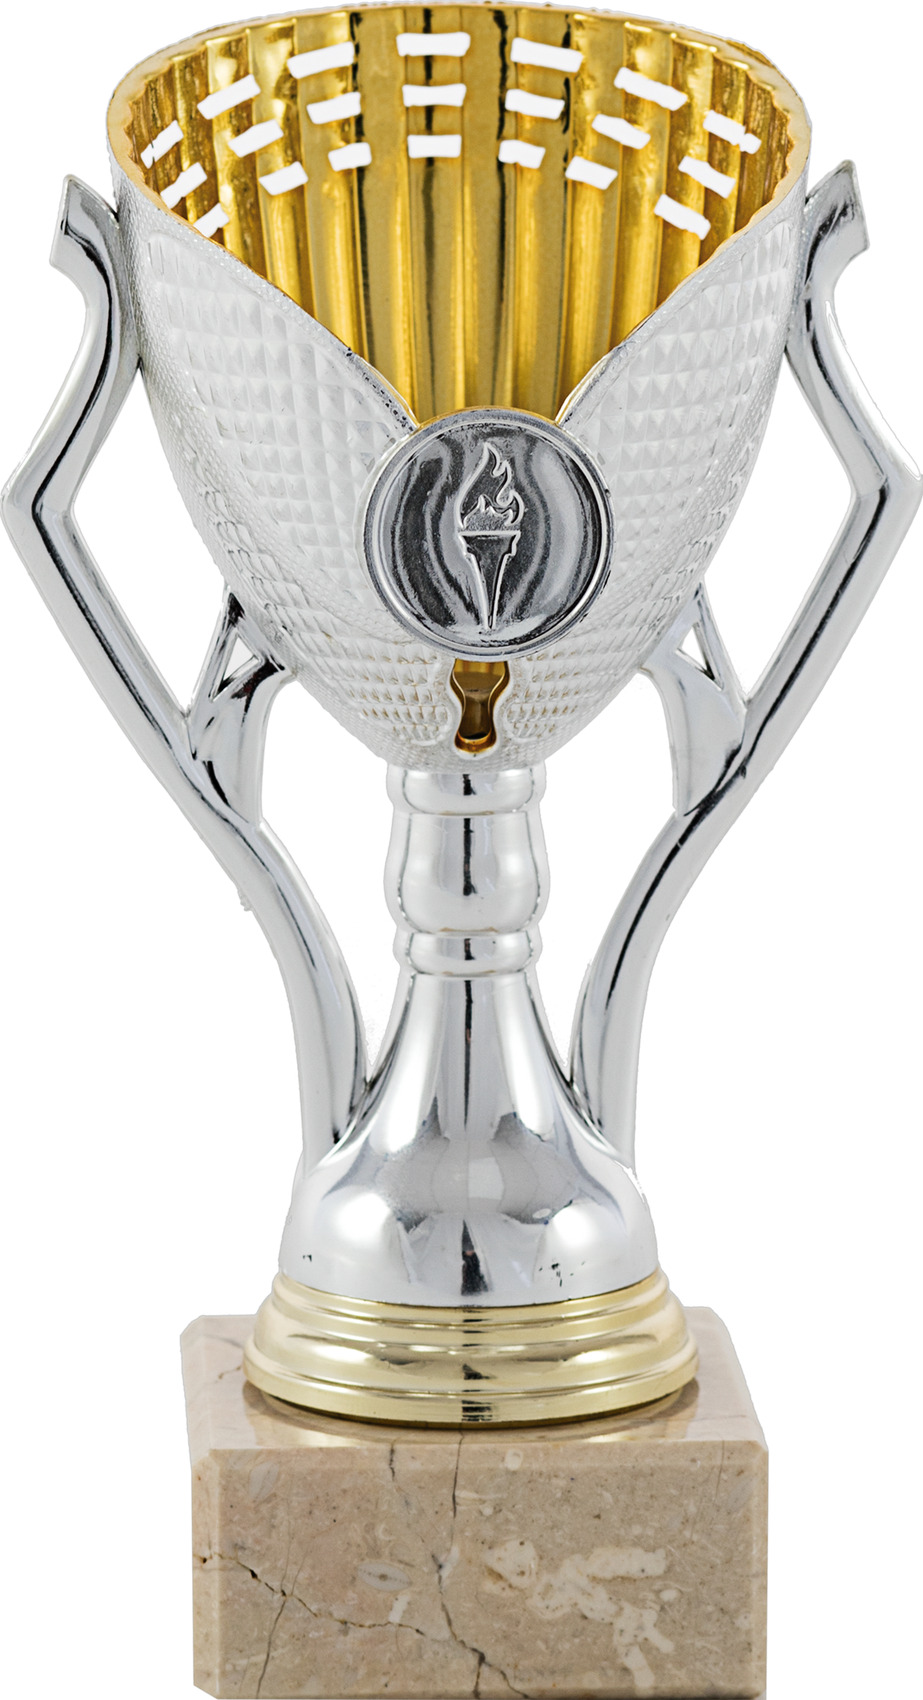 Trofeo Dam Ensaladera Cristal Plata online - Trofeos de Cristal